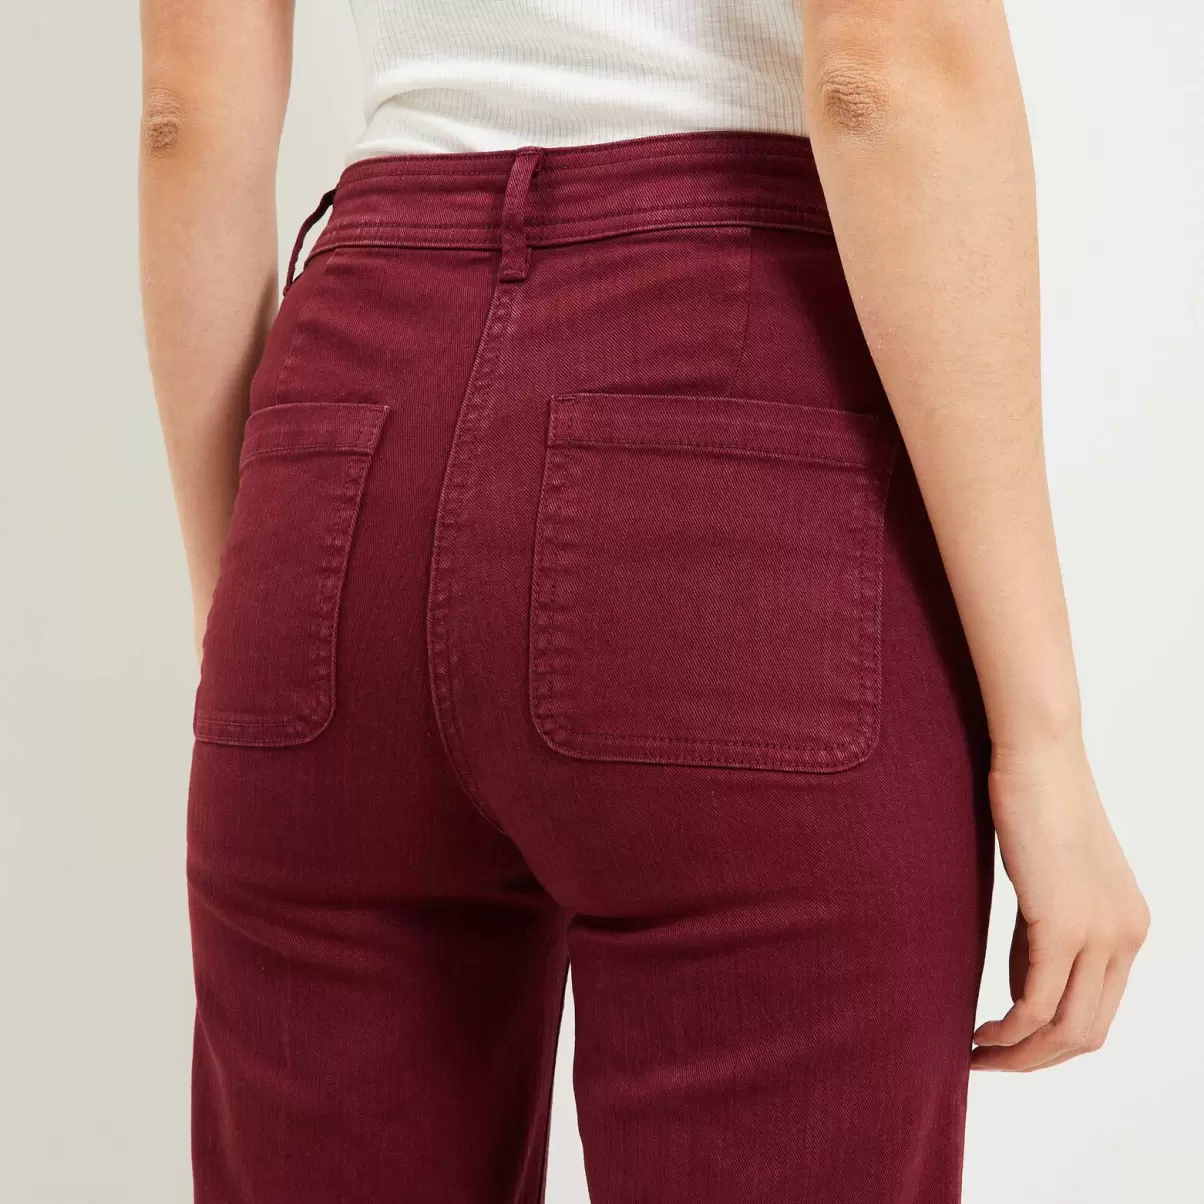 Femme Esthétique Pantalon Flare Raccourci Femme Grain De Malic Jeans Rouge Noirci - 3